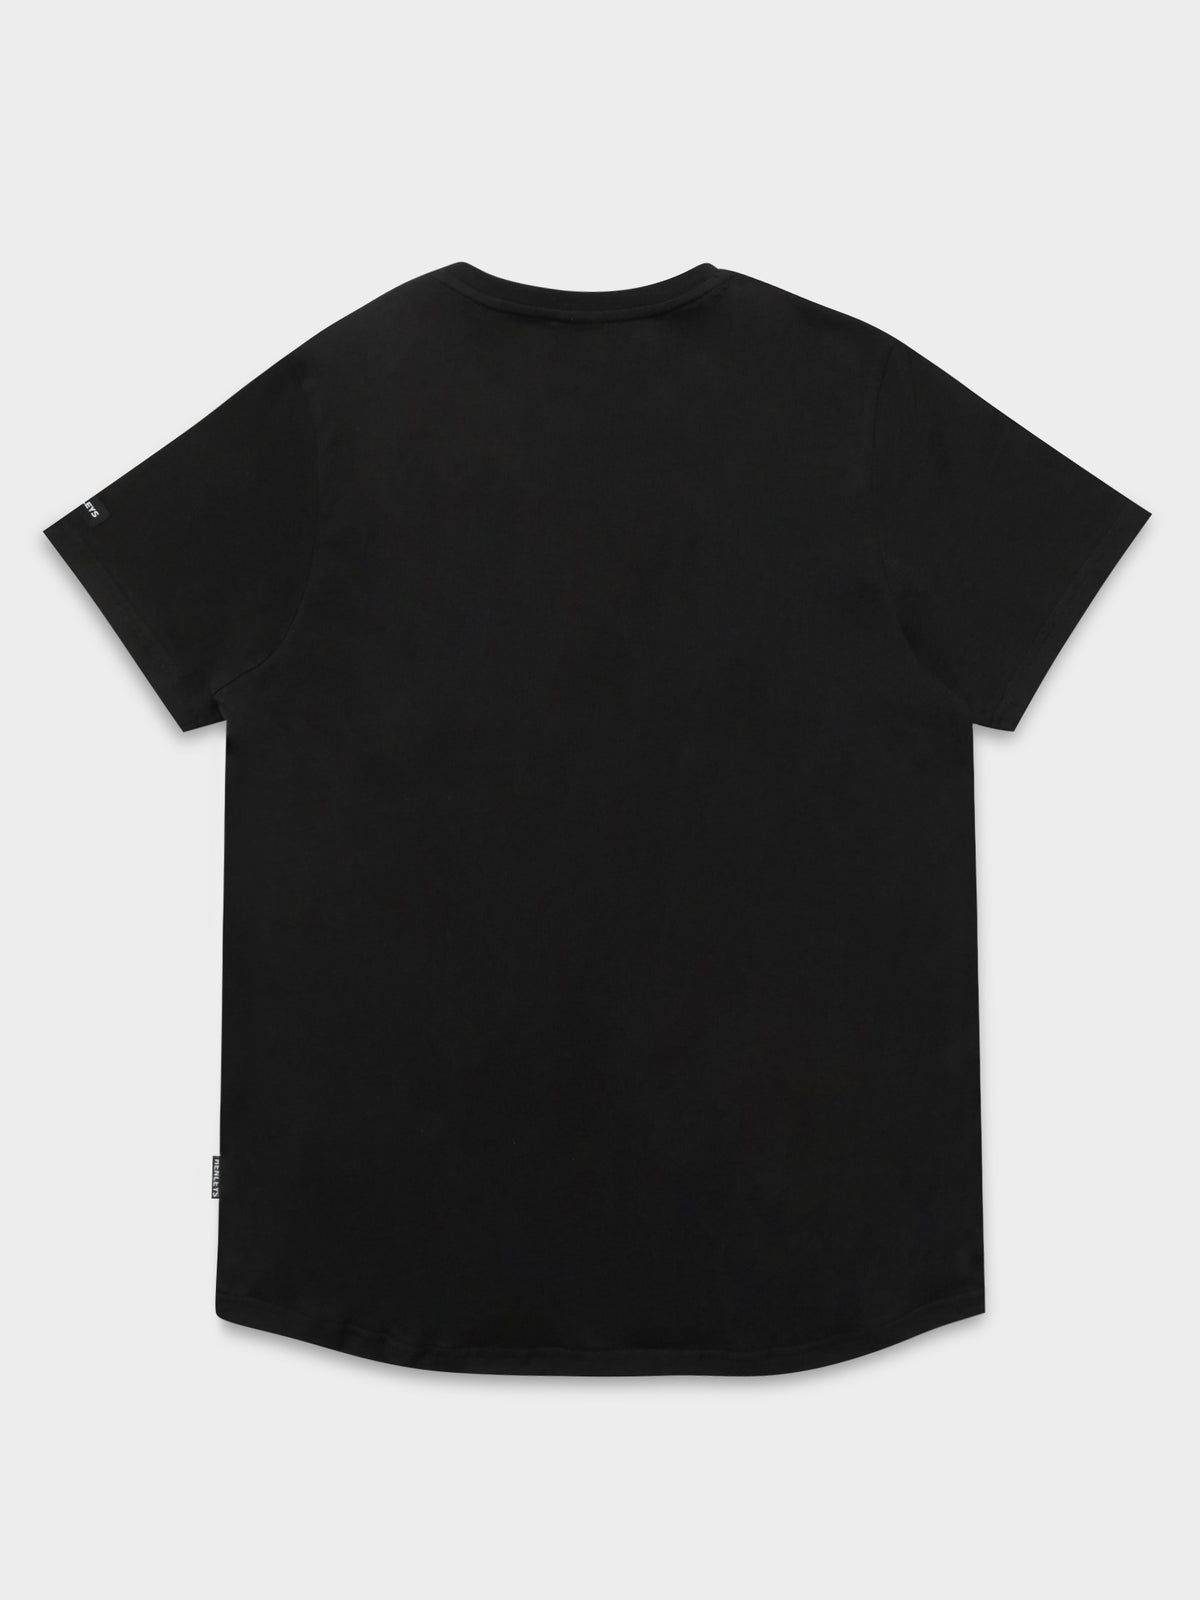 Slater T-Shirt in Black